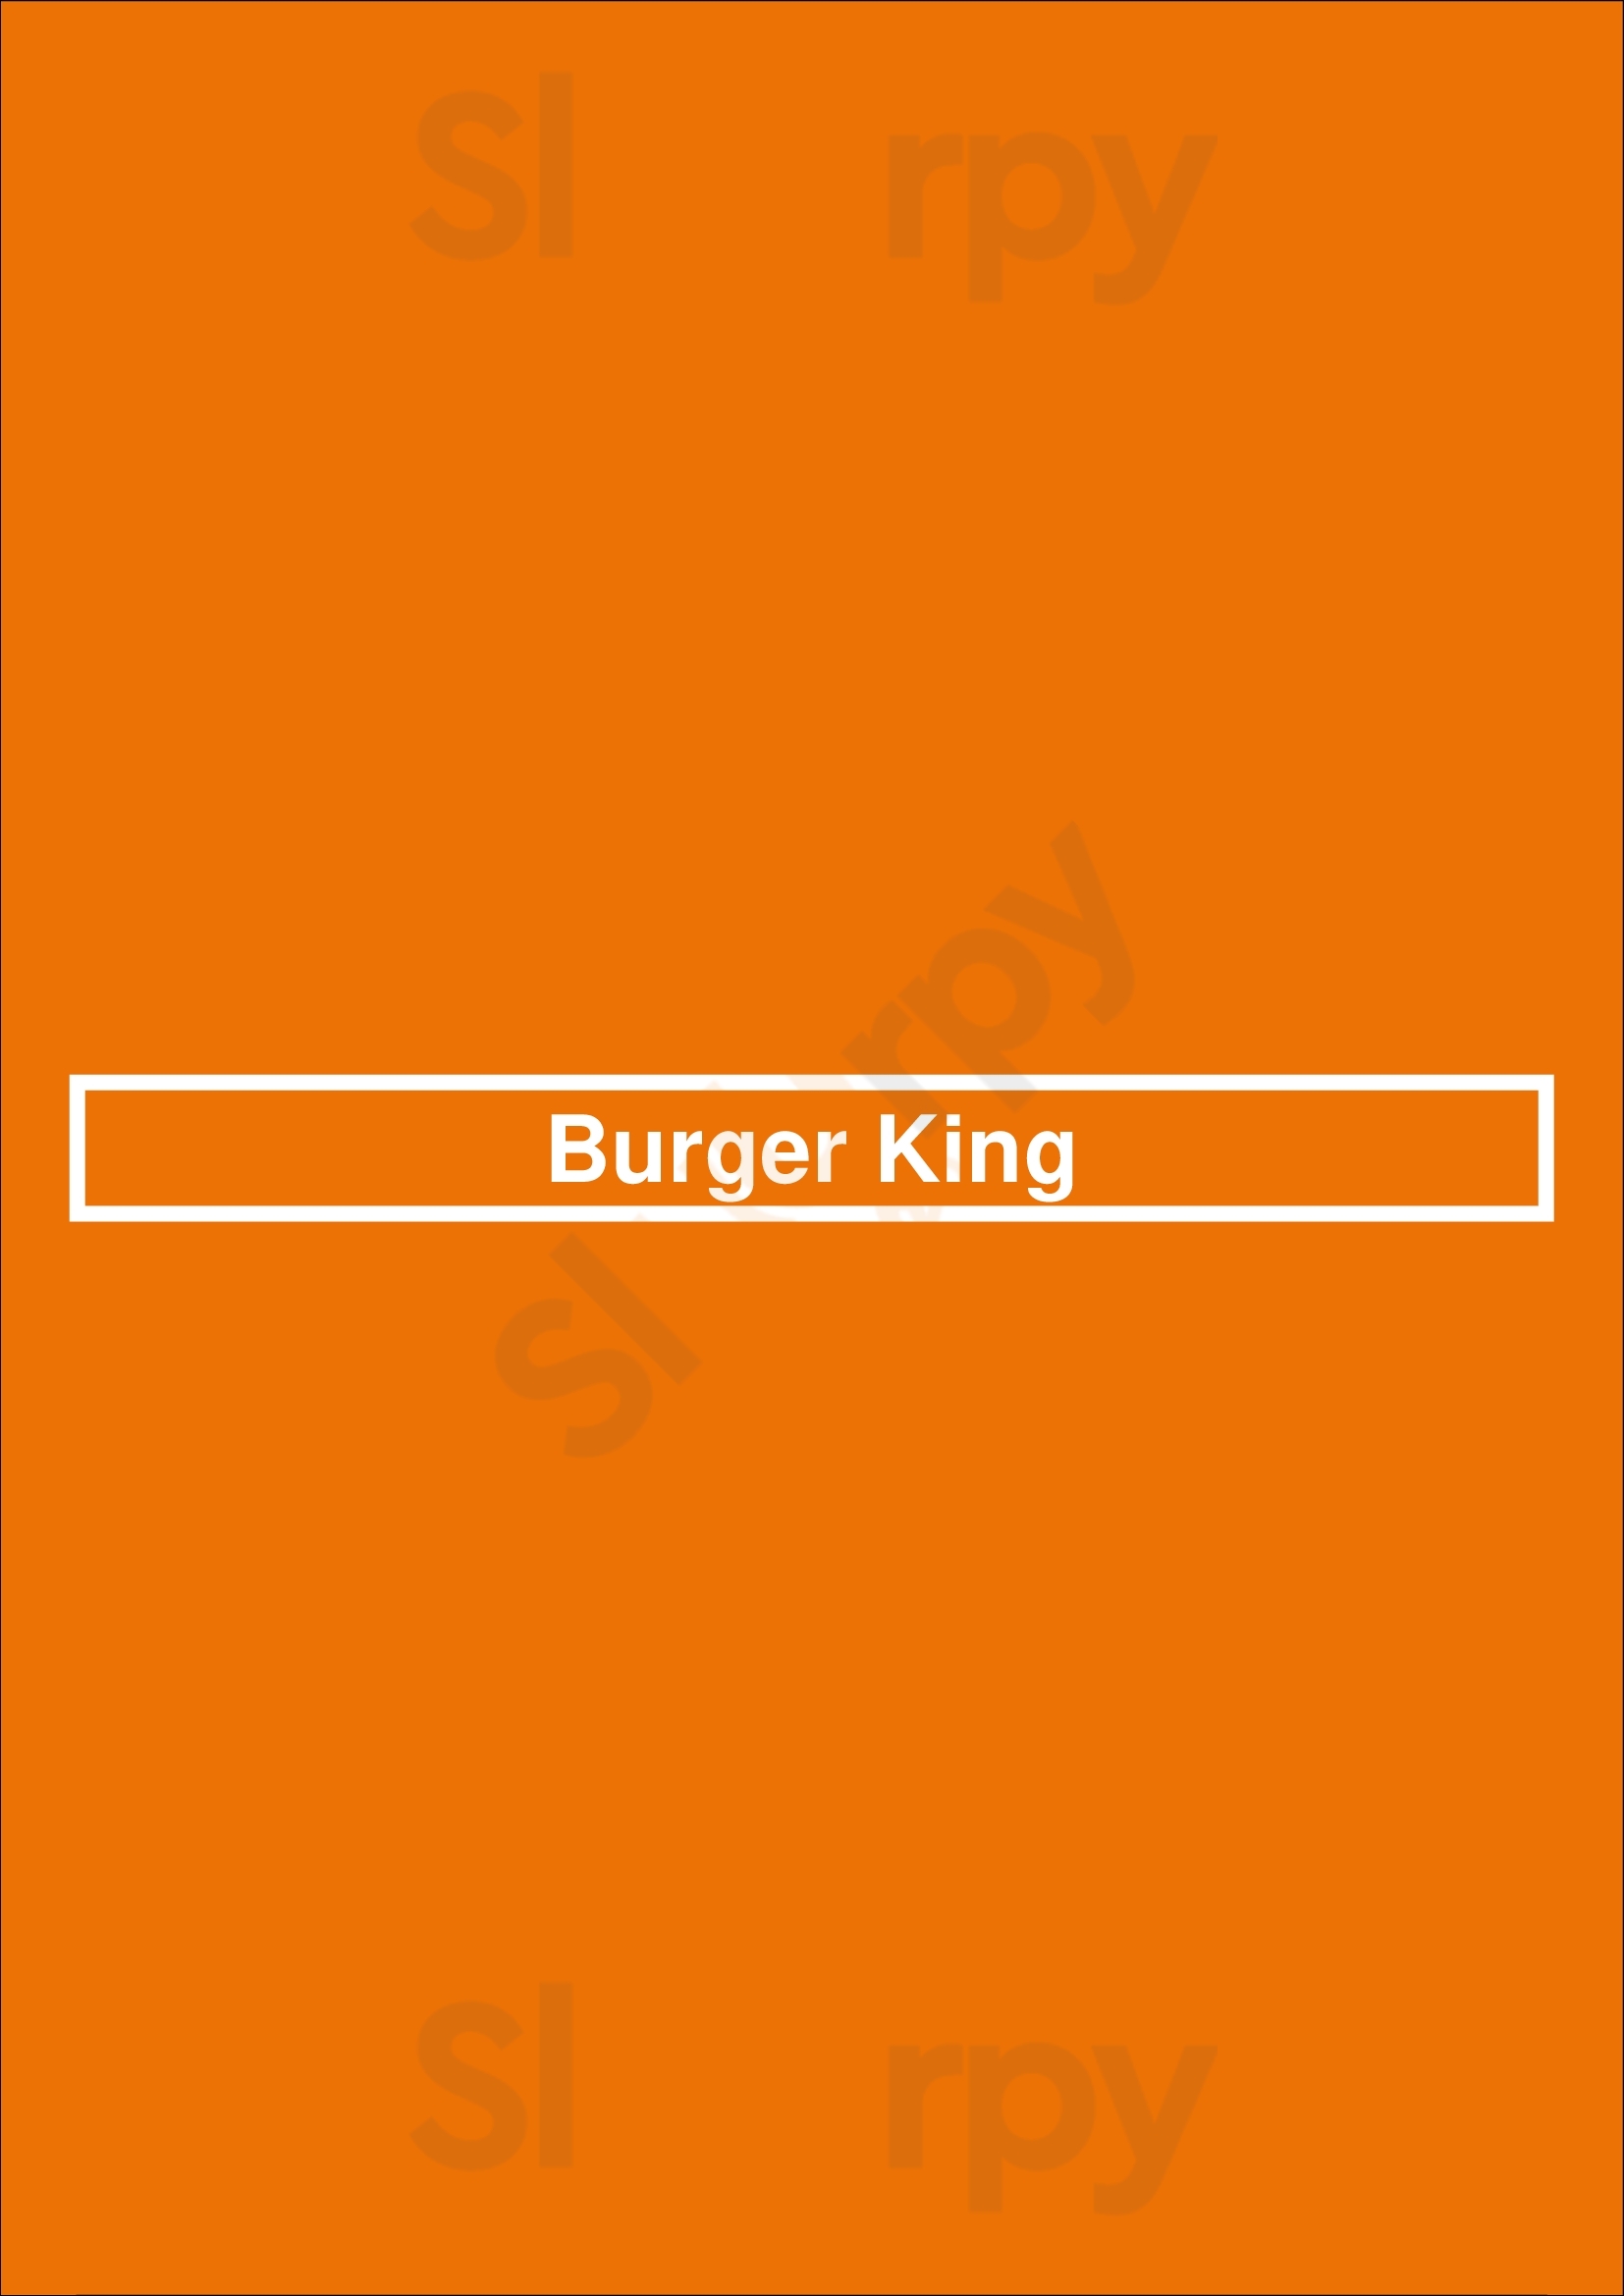 Burger King Greenville Menu - 1